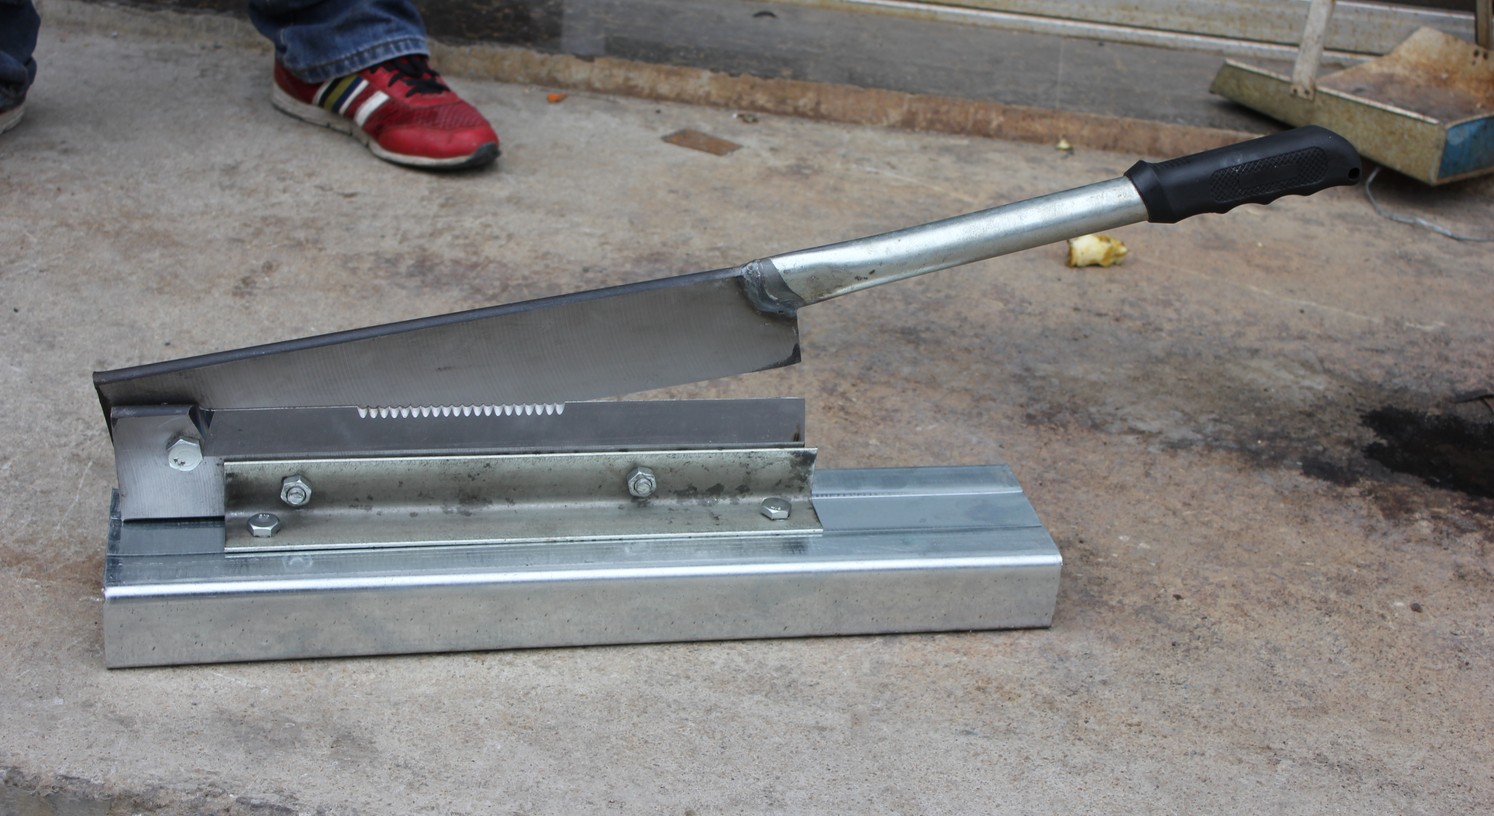 Гильотина инструмент. Longstar гильотина (резак по металлу). "Резак по металлу (гильотина) 19" Shear модель 3001". Режущий нож для гильотины mt9385. Резак (50-75 мм) SPK.